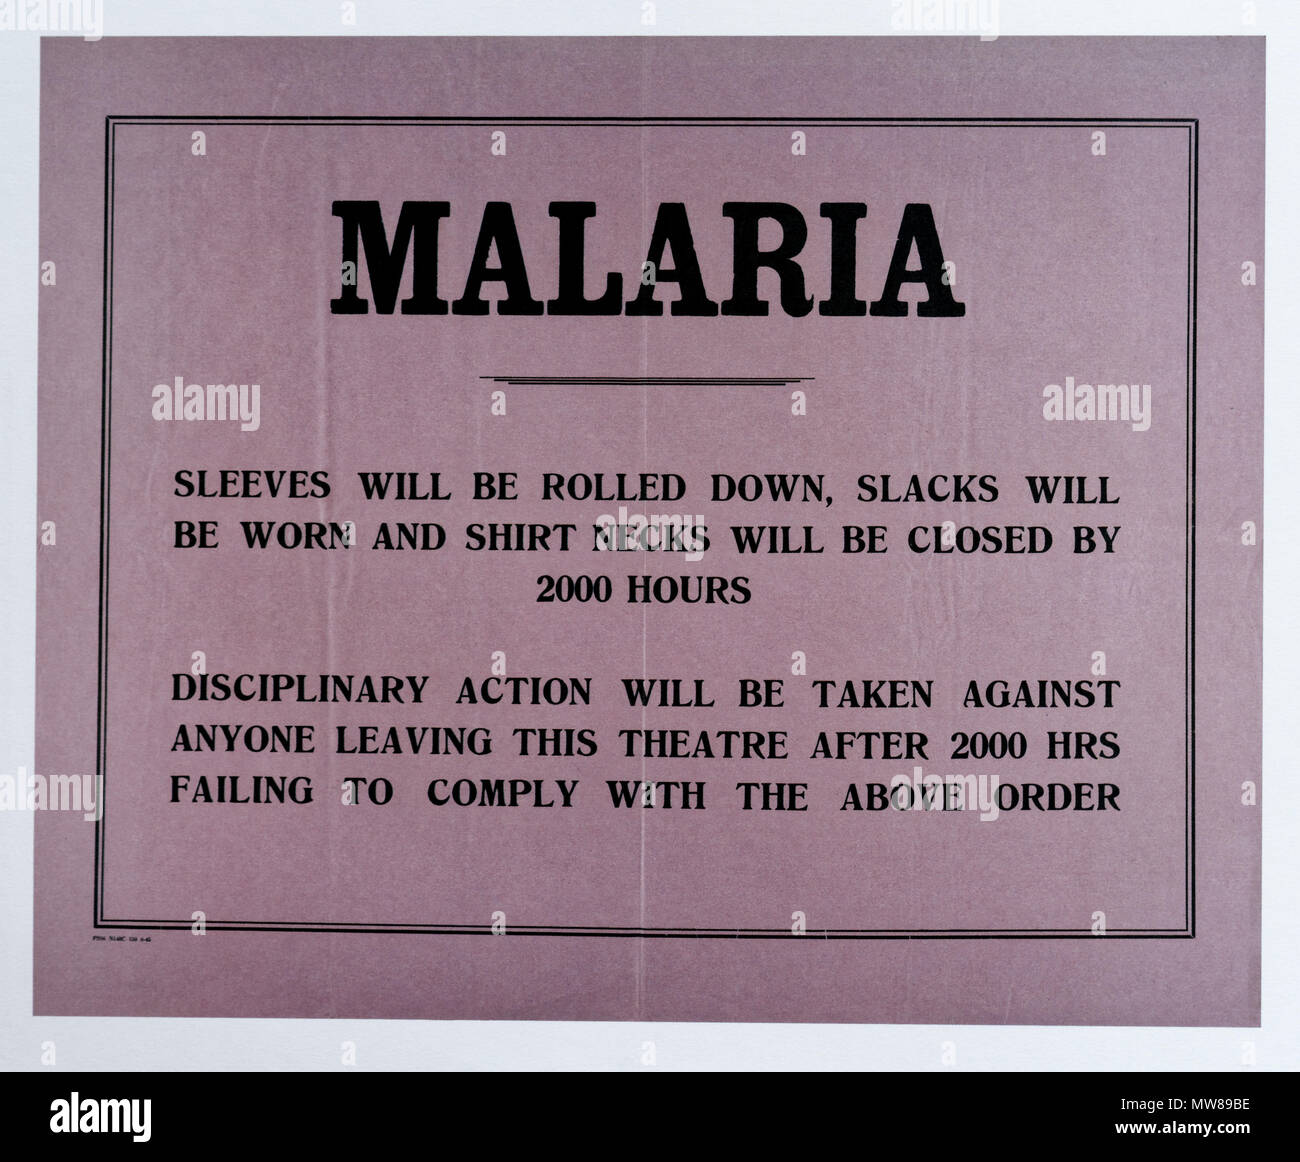 Una seconda guerra mondiale poster contenente consigli su come ridurre il rischio di malaria e minacciando la disciplina su coloro che non seguono i consigli Foto Stock